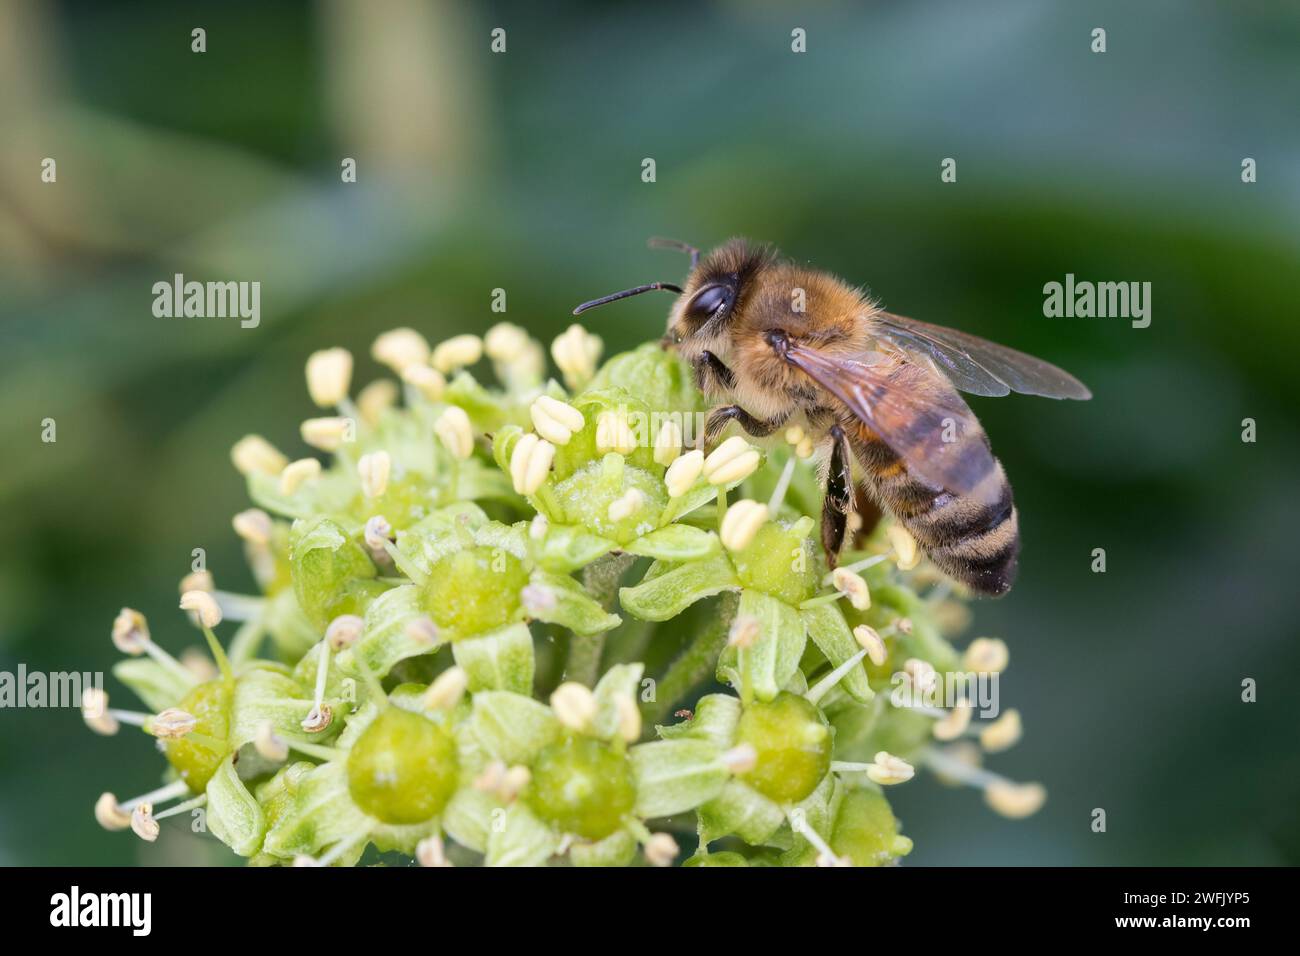 Honigbiene, Honig-Biene, Europäische Honigbiene, Westliche Honigbiene, Biene, Bienen, Apis mellifera, Apis mellifica, honey bee, hive bee, western hon Stock Photo